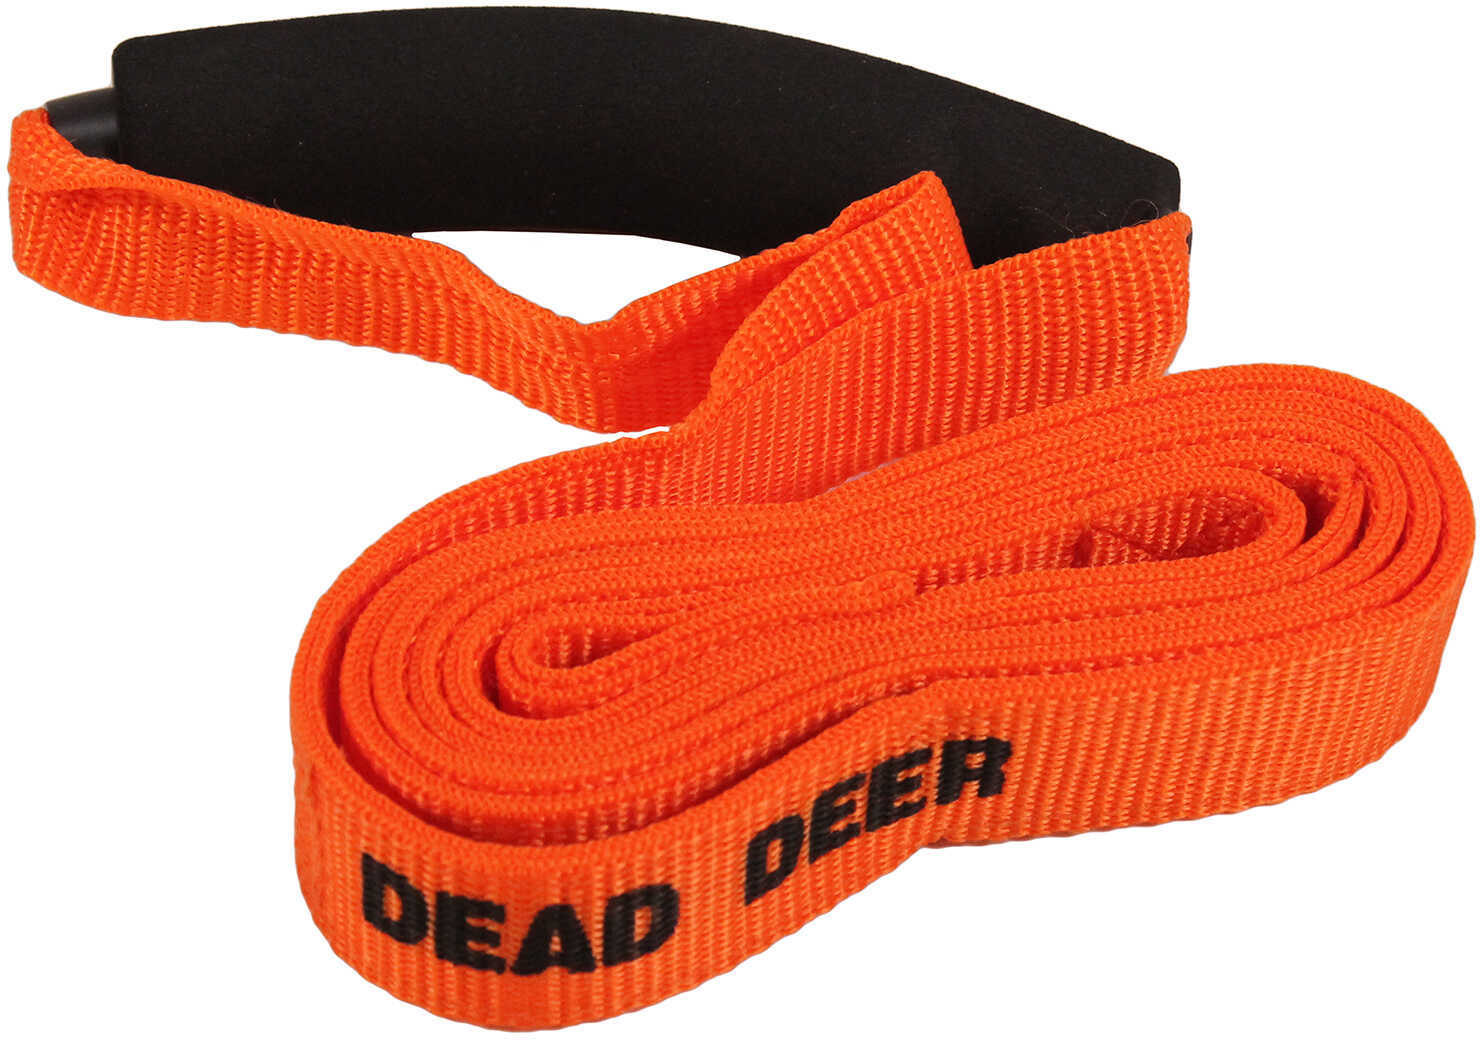 Do All Dead Deer Pro Drag